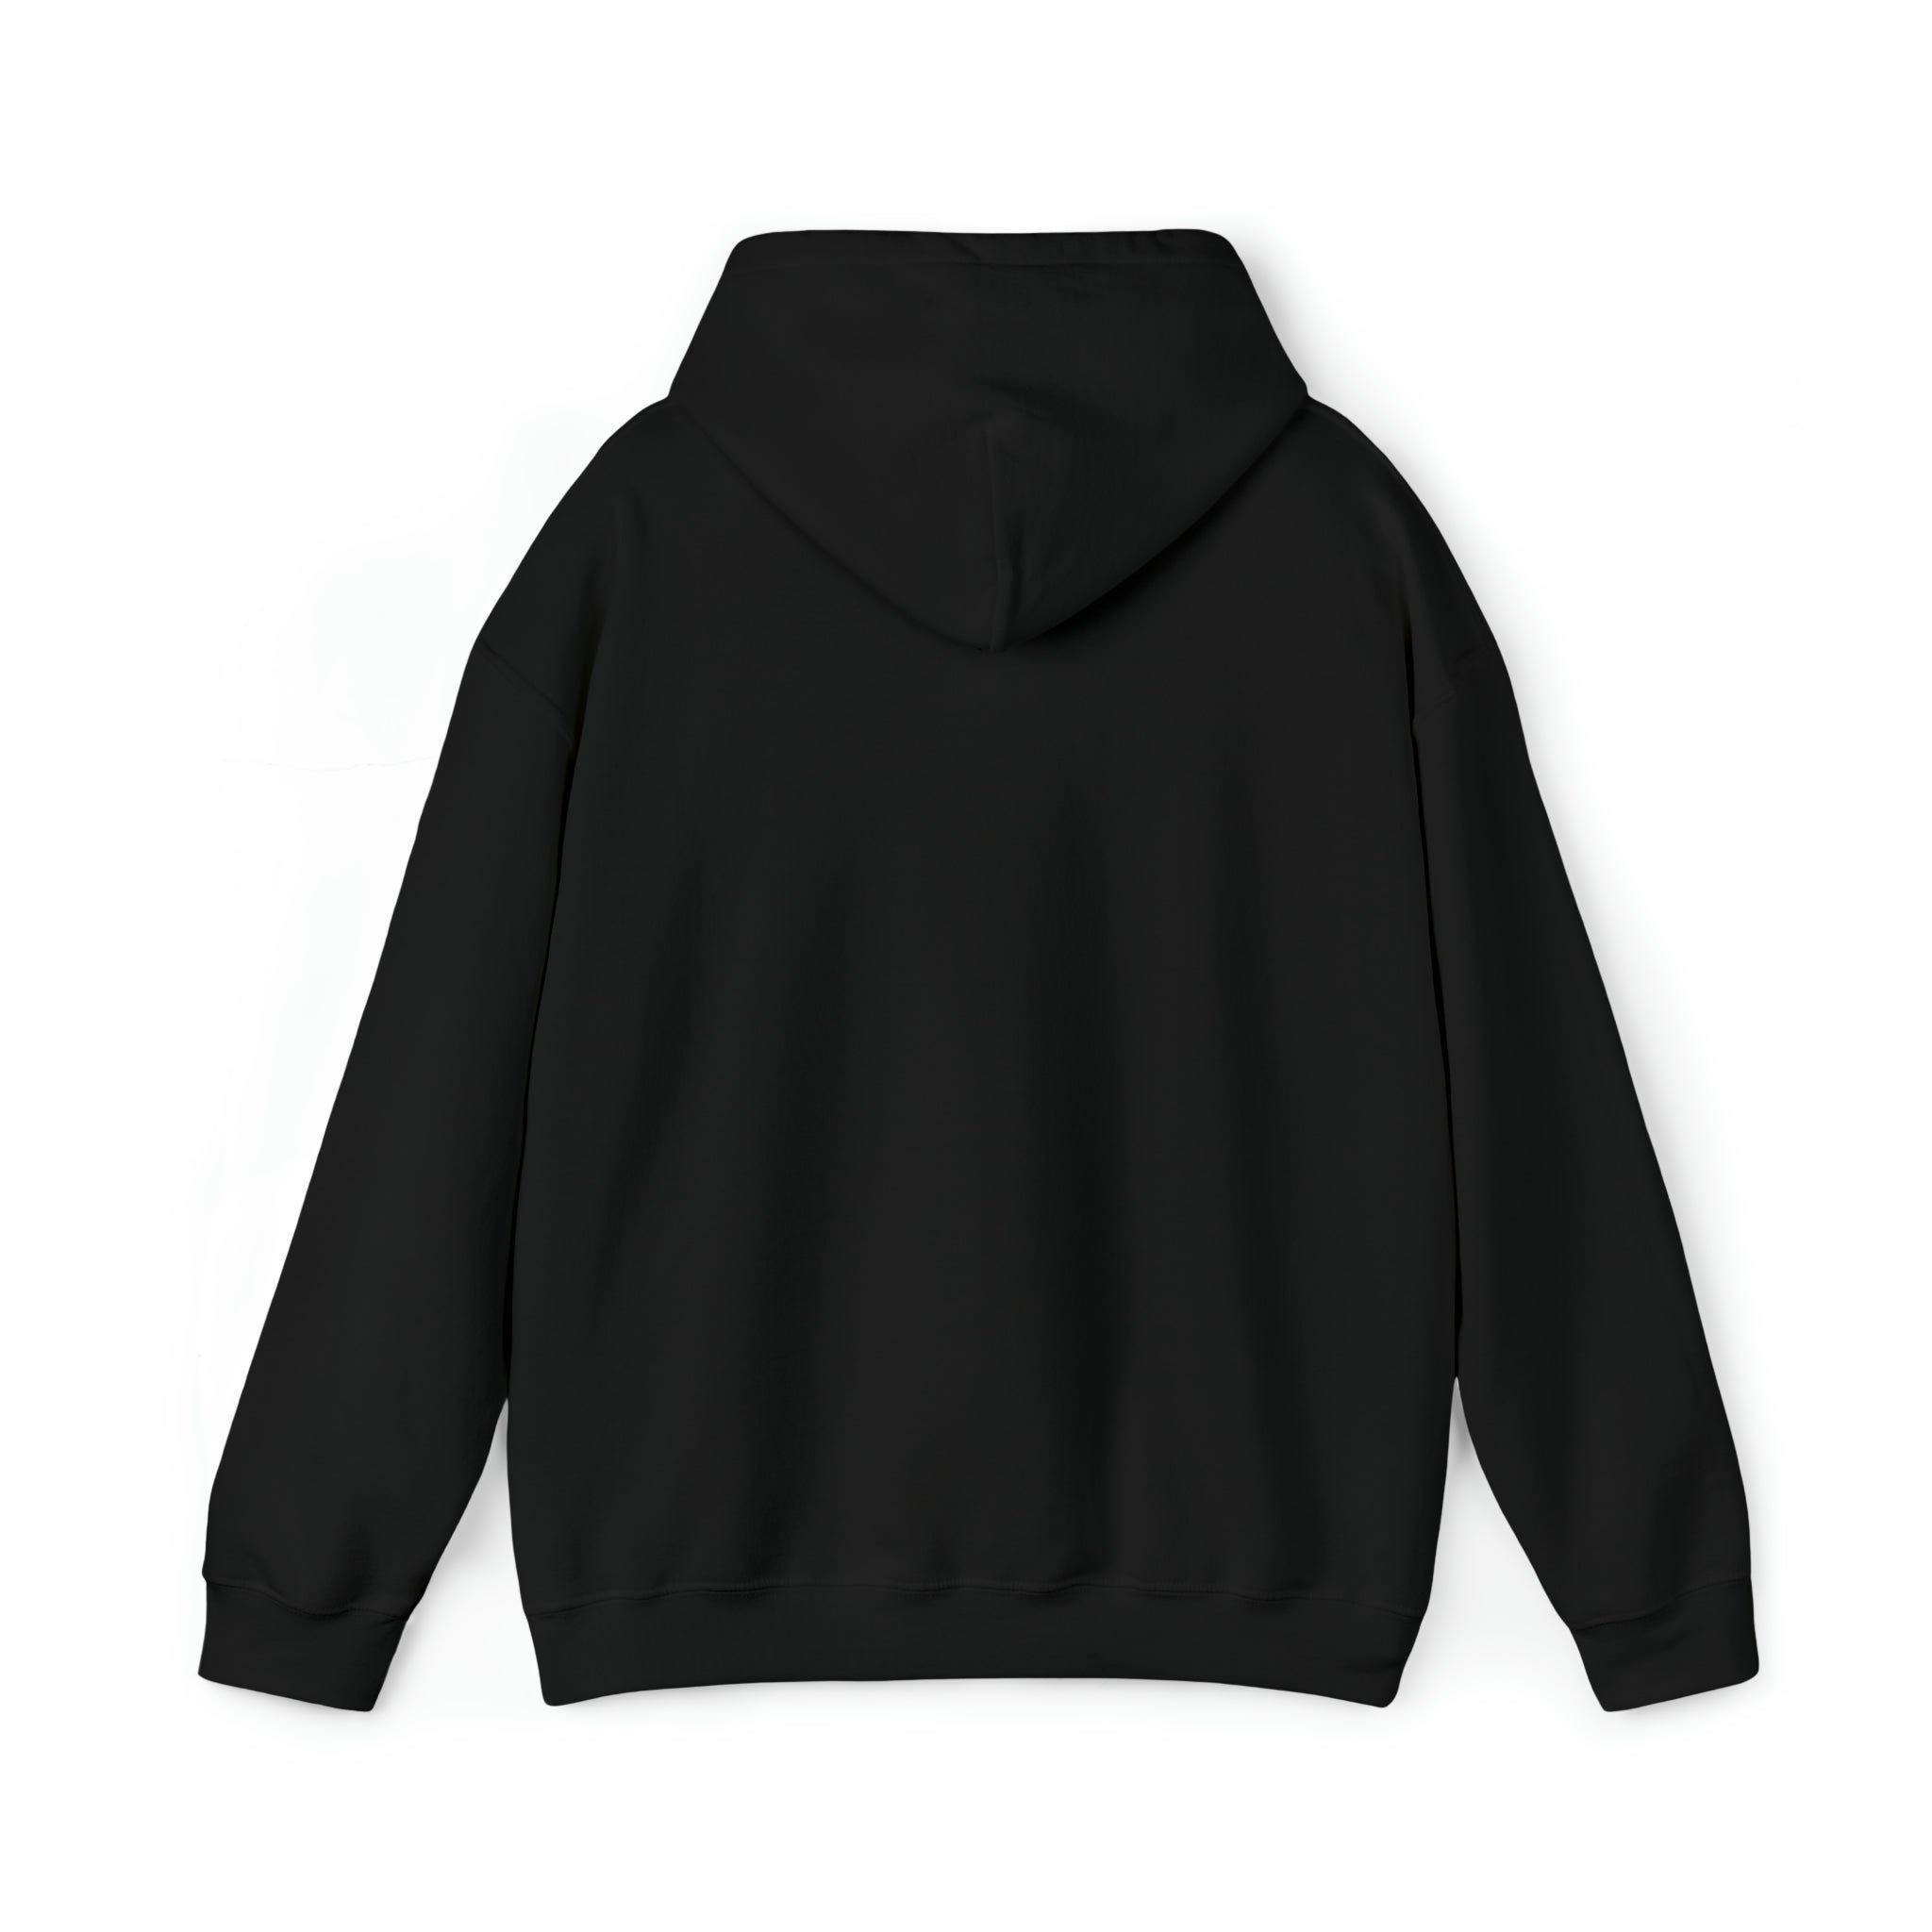 Braddock - The 'Burgh Neighborhood Series - Unisex Heavy Blend™ Hooded  Sweatshirt - Black / S